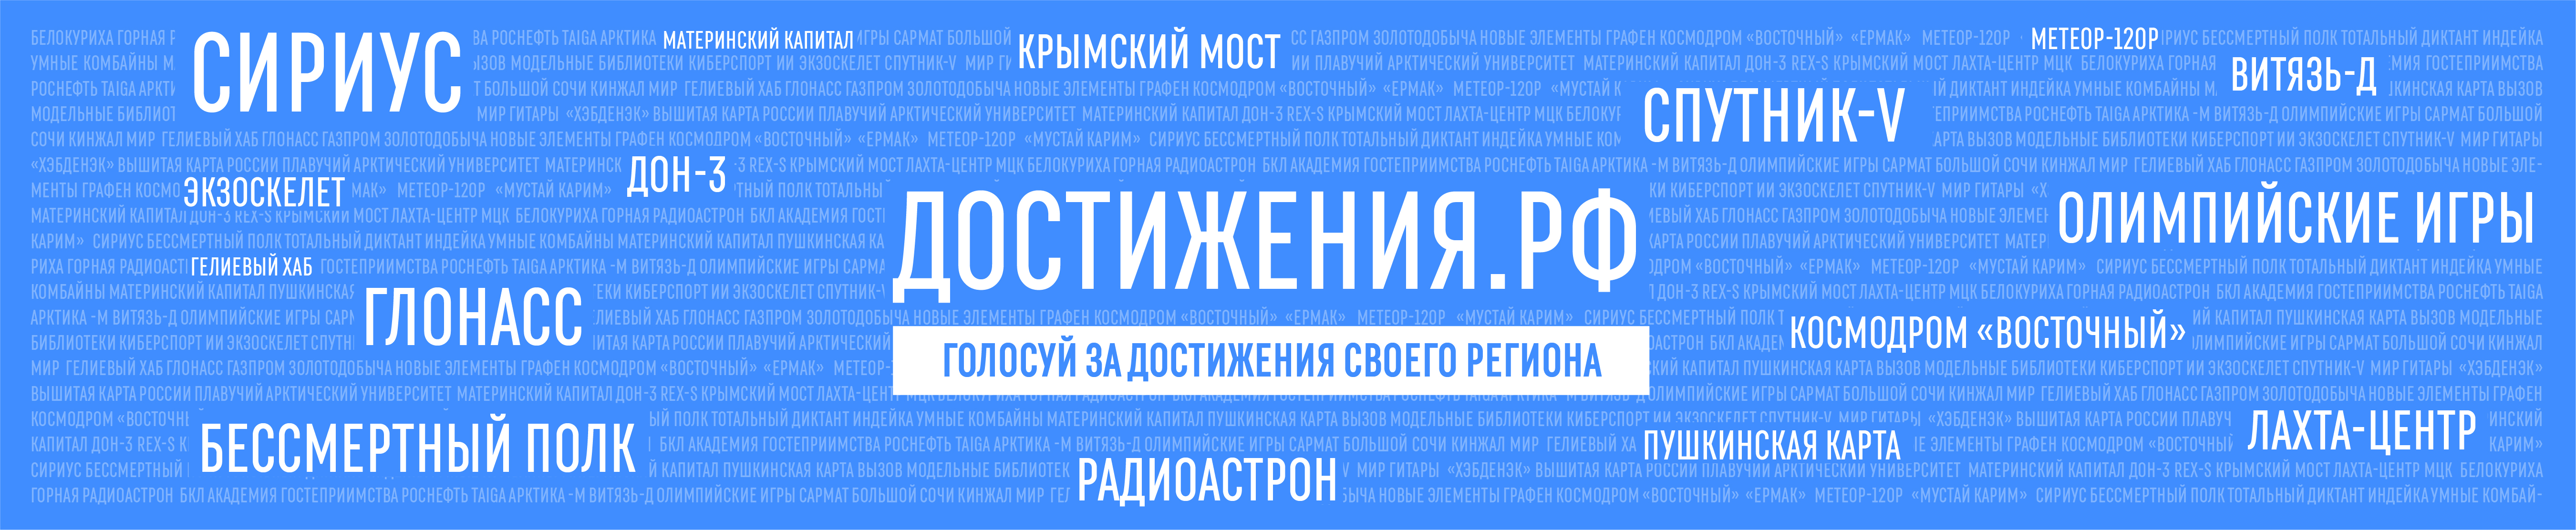 Онлайн-голосование за значимые достижения Российских регионов.